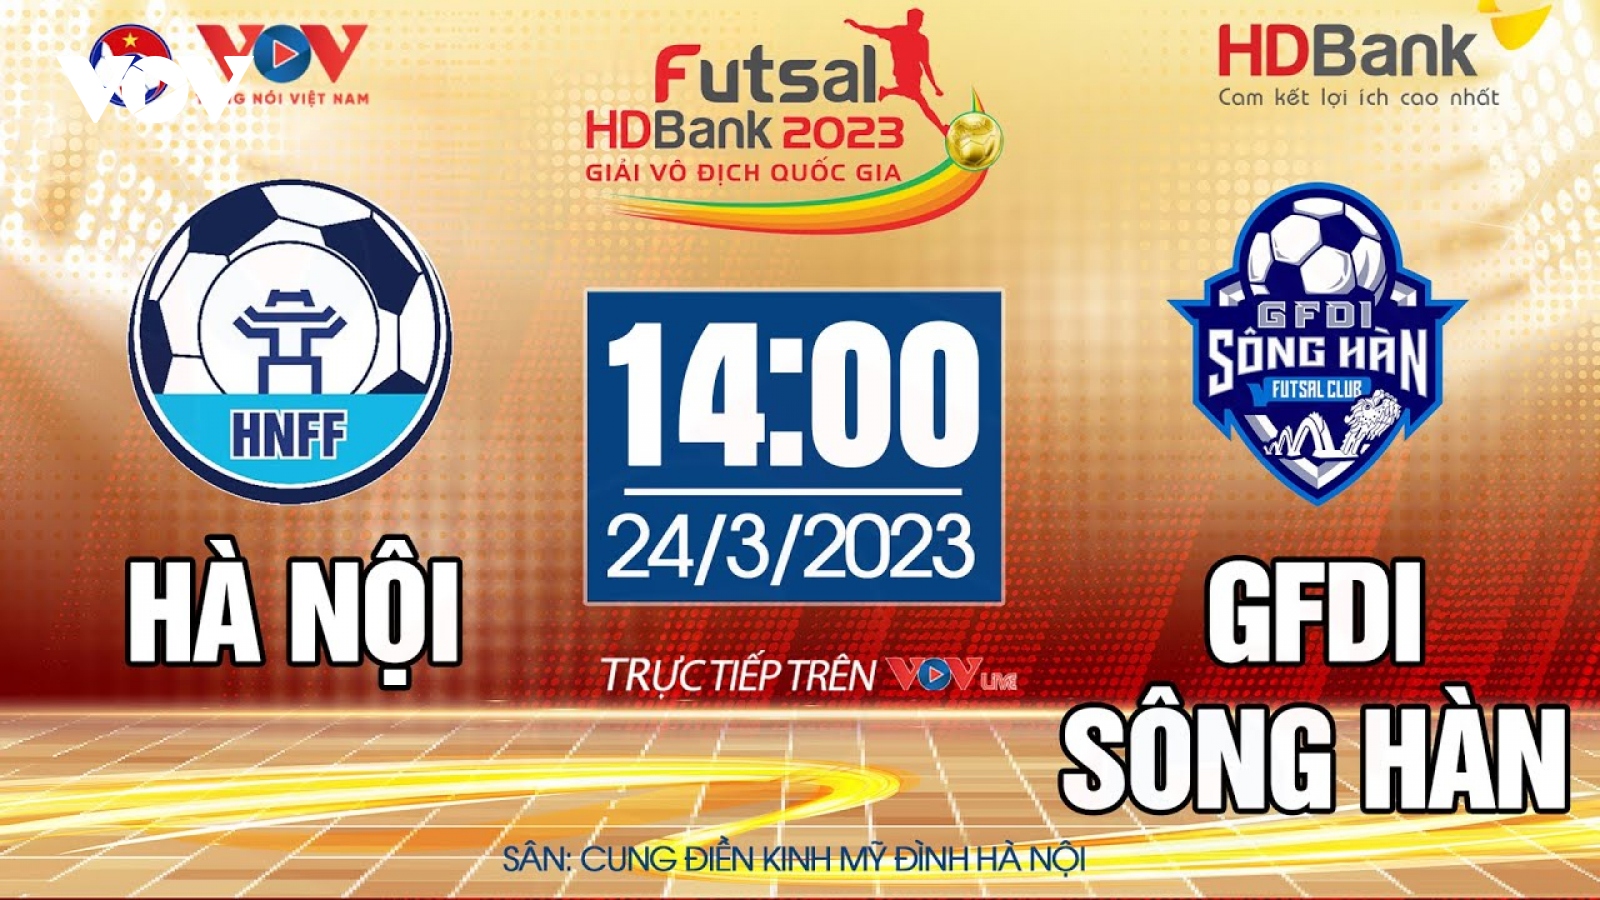 Trực tiếp Hà Nội vs GFDI Sông Hàn Giải Futsal HDBank VĐQG 2023